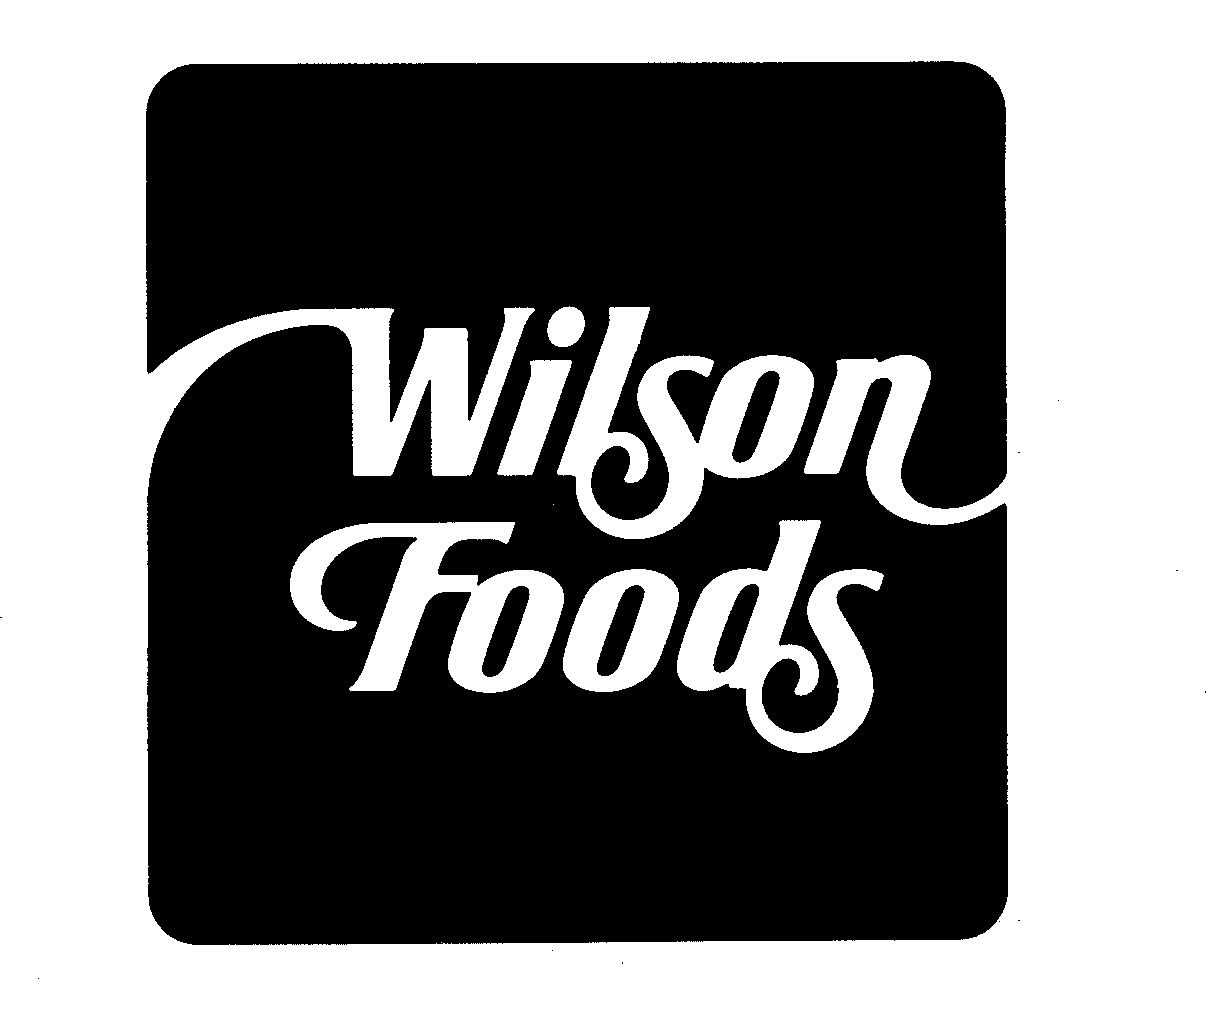 WILSON FOODS